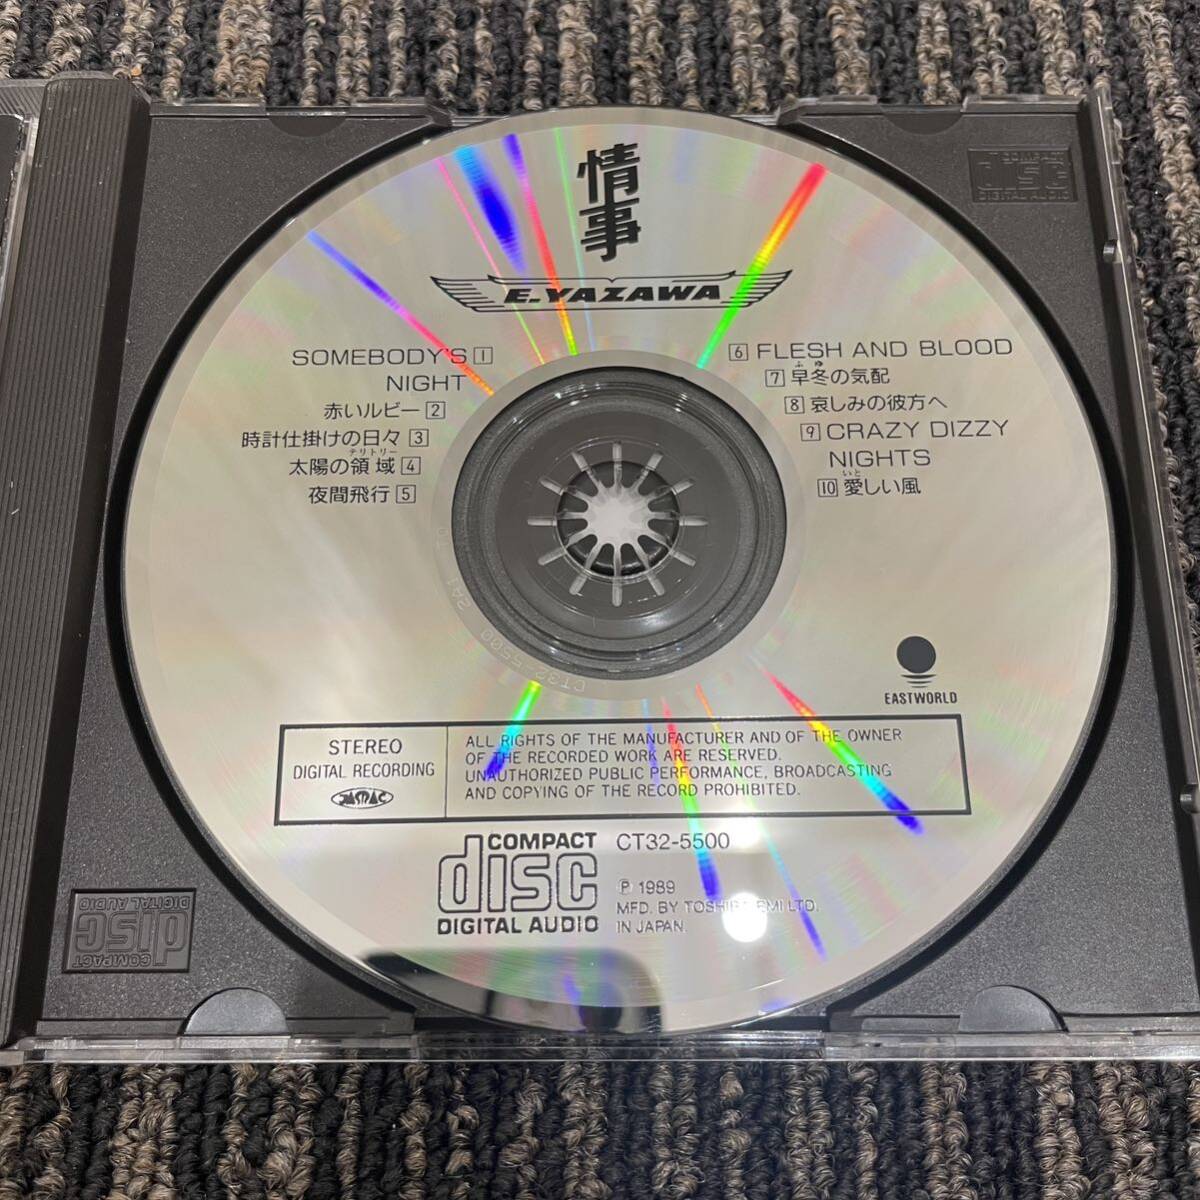 ◇ 中古CD 矢沢永吉 / Eikichi Yazawa 情事 98年盤 10曲収録 CD 17th アルバム ♪SOMEBODY'S NIGHT,愛(いと)しい風　他_画像8